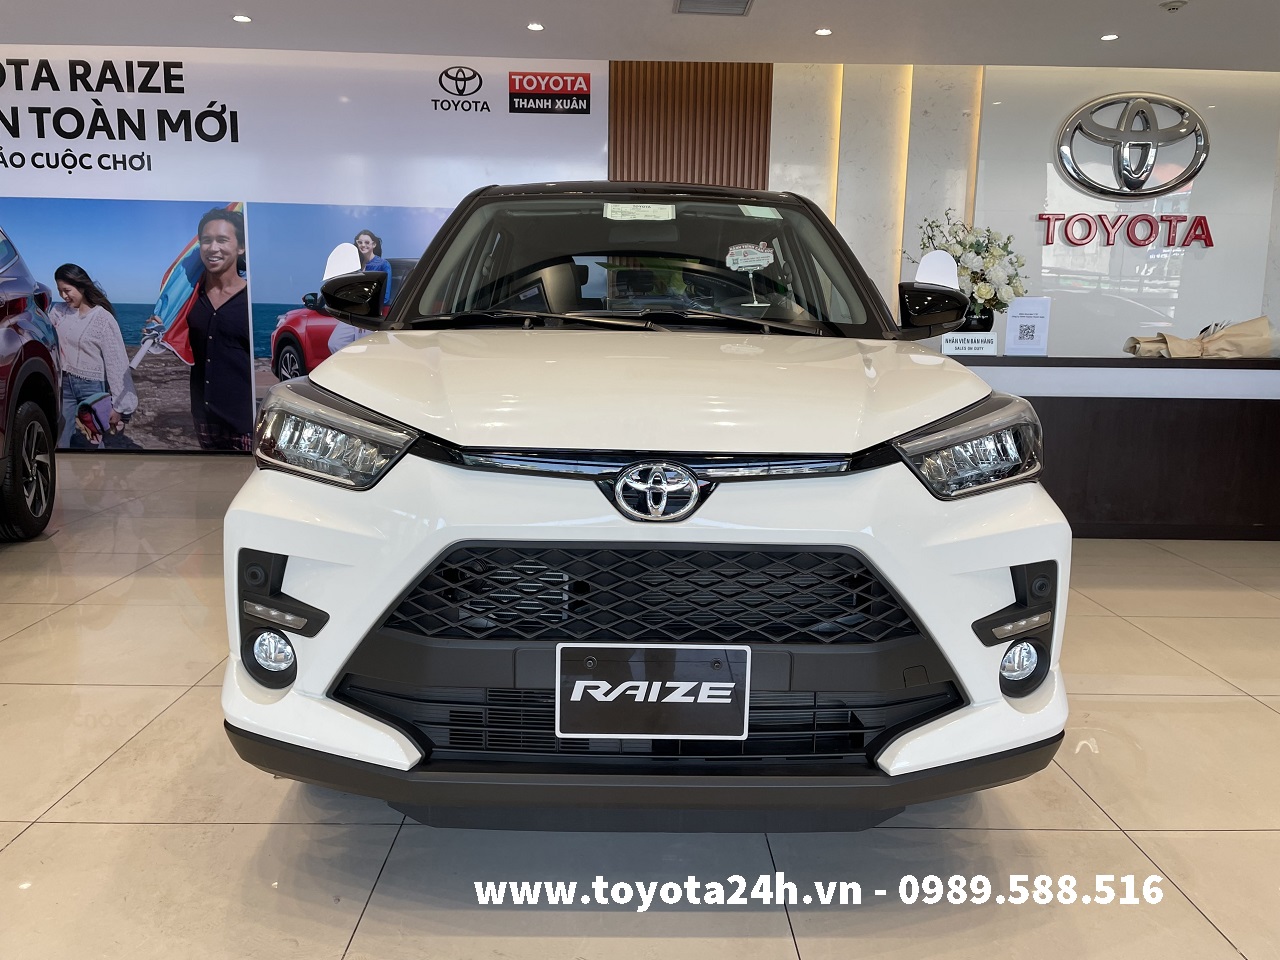 Toyota Raize 2022 Màu Trắng Nóc Đen | Bảng Giá Xe | Lăn Bánh | Thông Số Kỹ Thuật